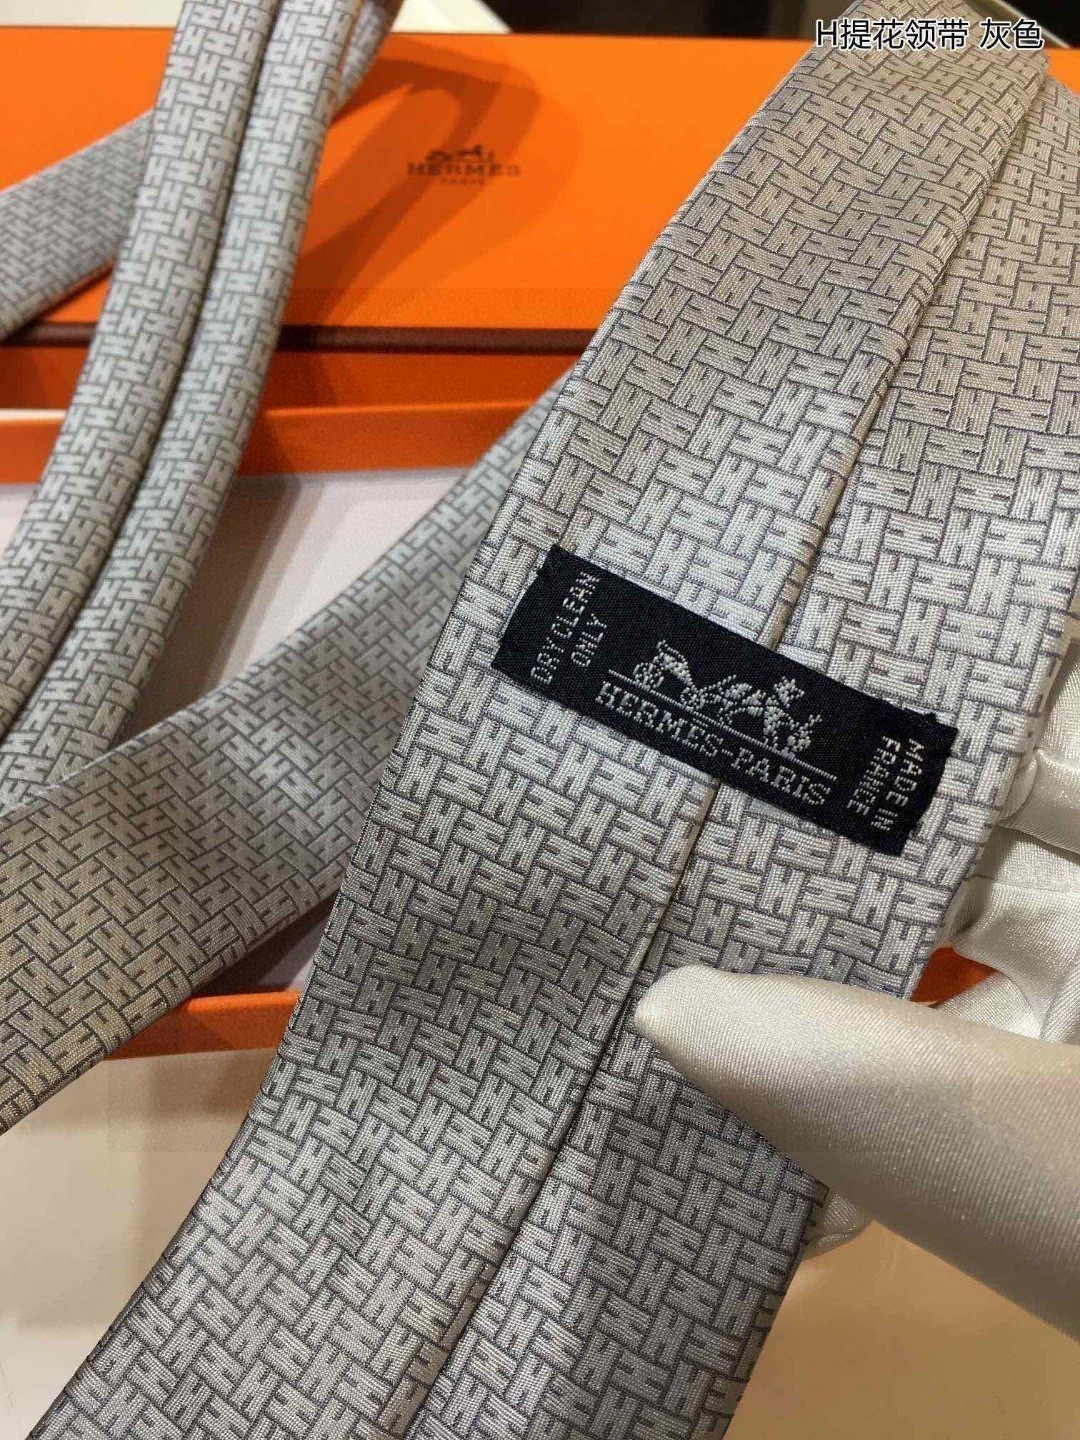 特价男士新款领带系列H提花领带稀有H家每年都有一千条不同印花的领带面世从最初的多以几何图案表现骑术活动为